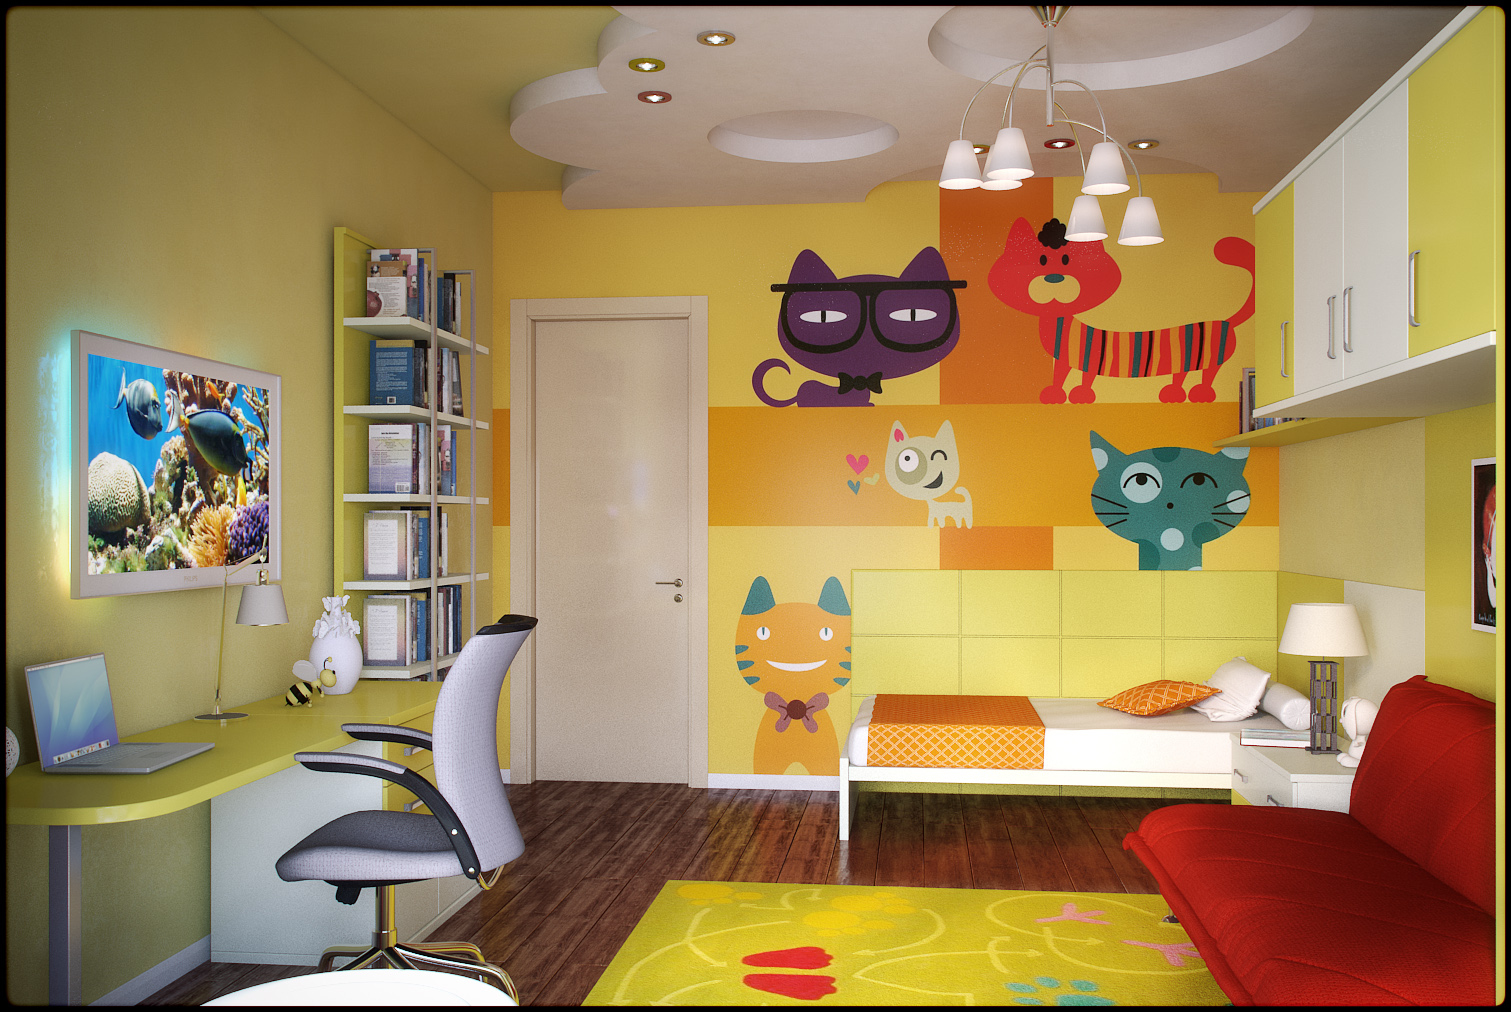 világos nappali belső tér, különböző színekben